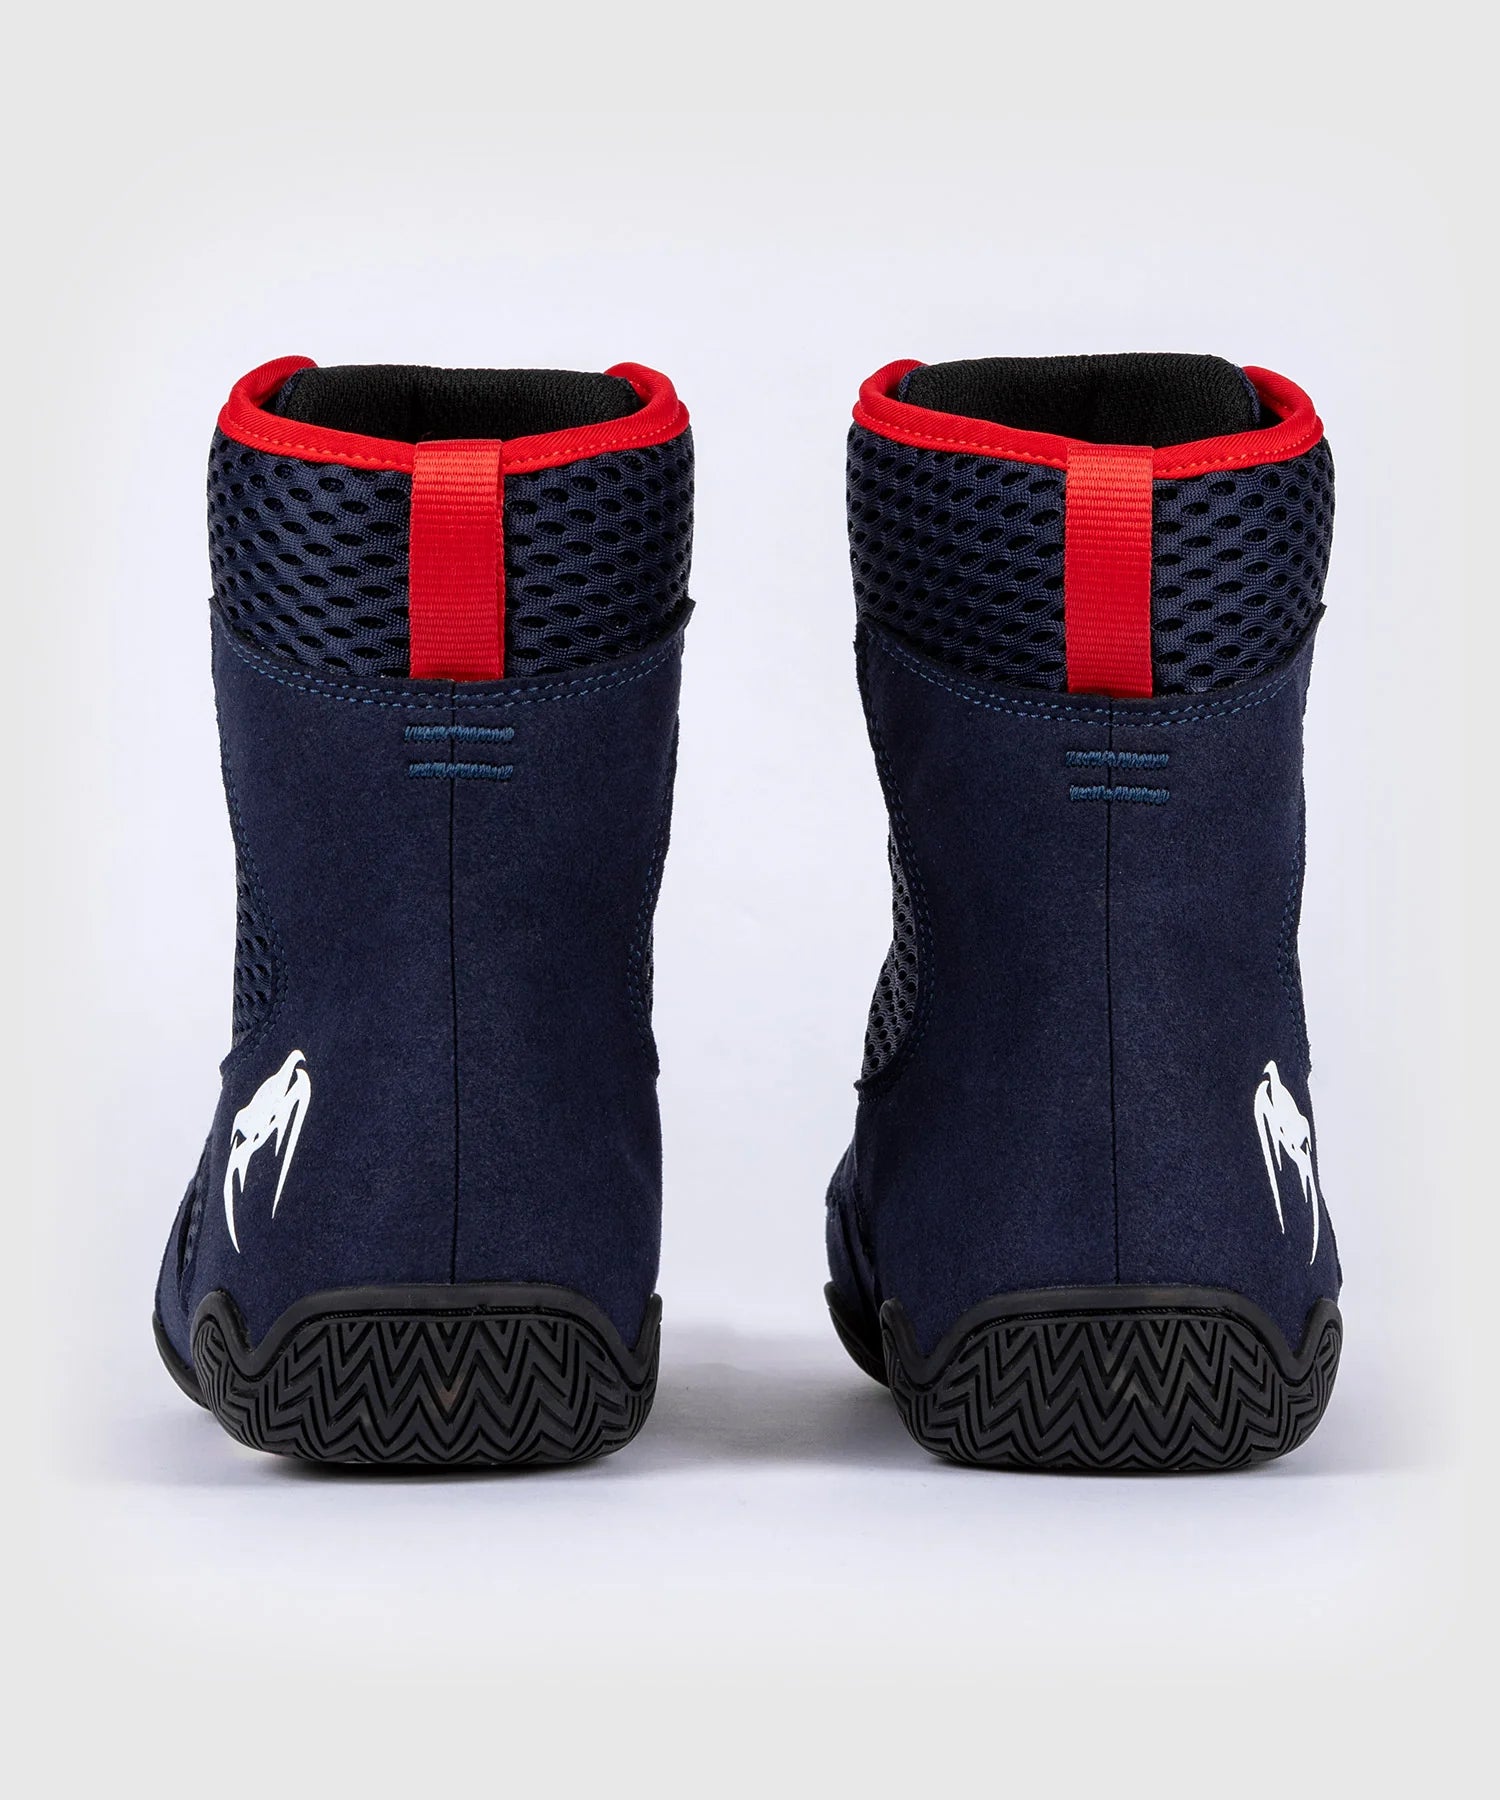 Chaussures de Boxe Venum Contender - Bleu Marine/Rouge